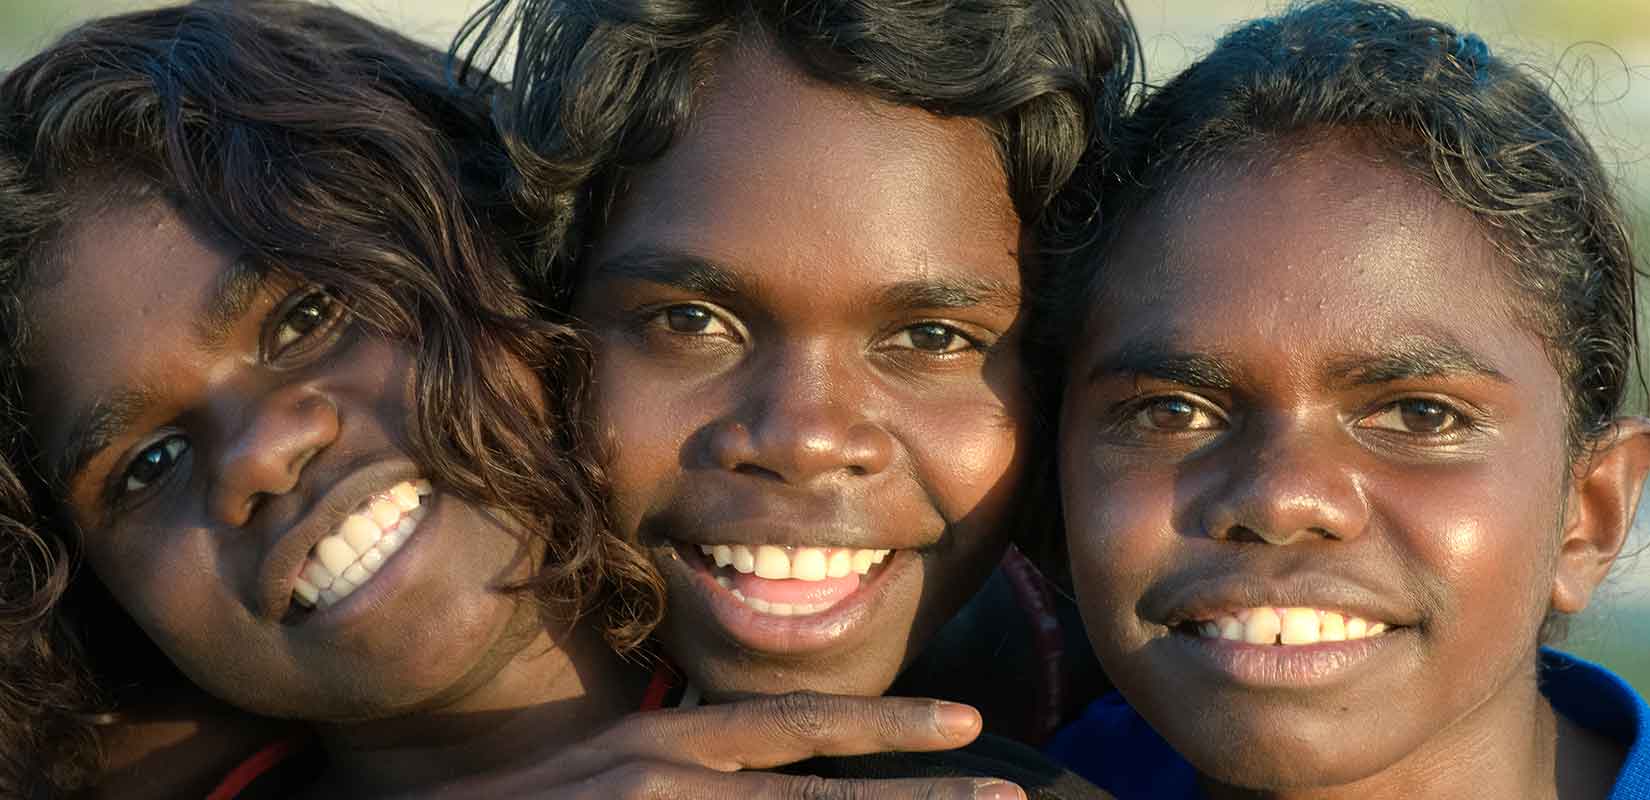 Негроидная раса население. Австралоиды океанийская раса. Австралоиды (аборигены Австралии). Меланезийская раса австралоидная. Экваториальная раса (Негро-австралоидная).